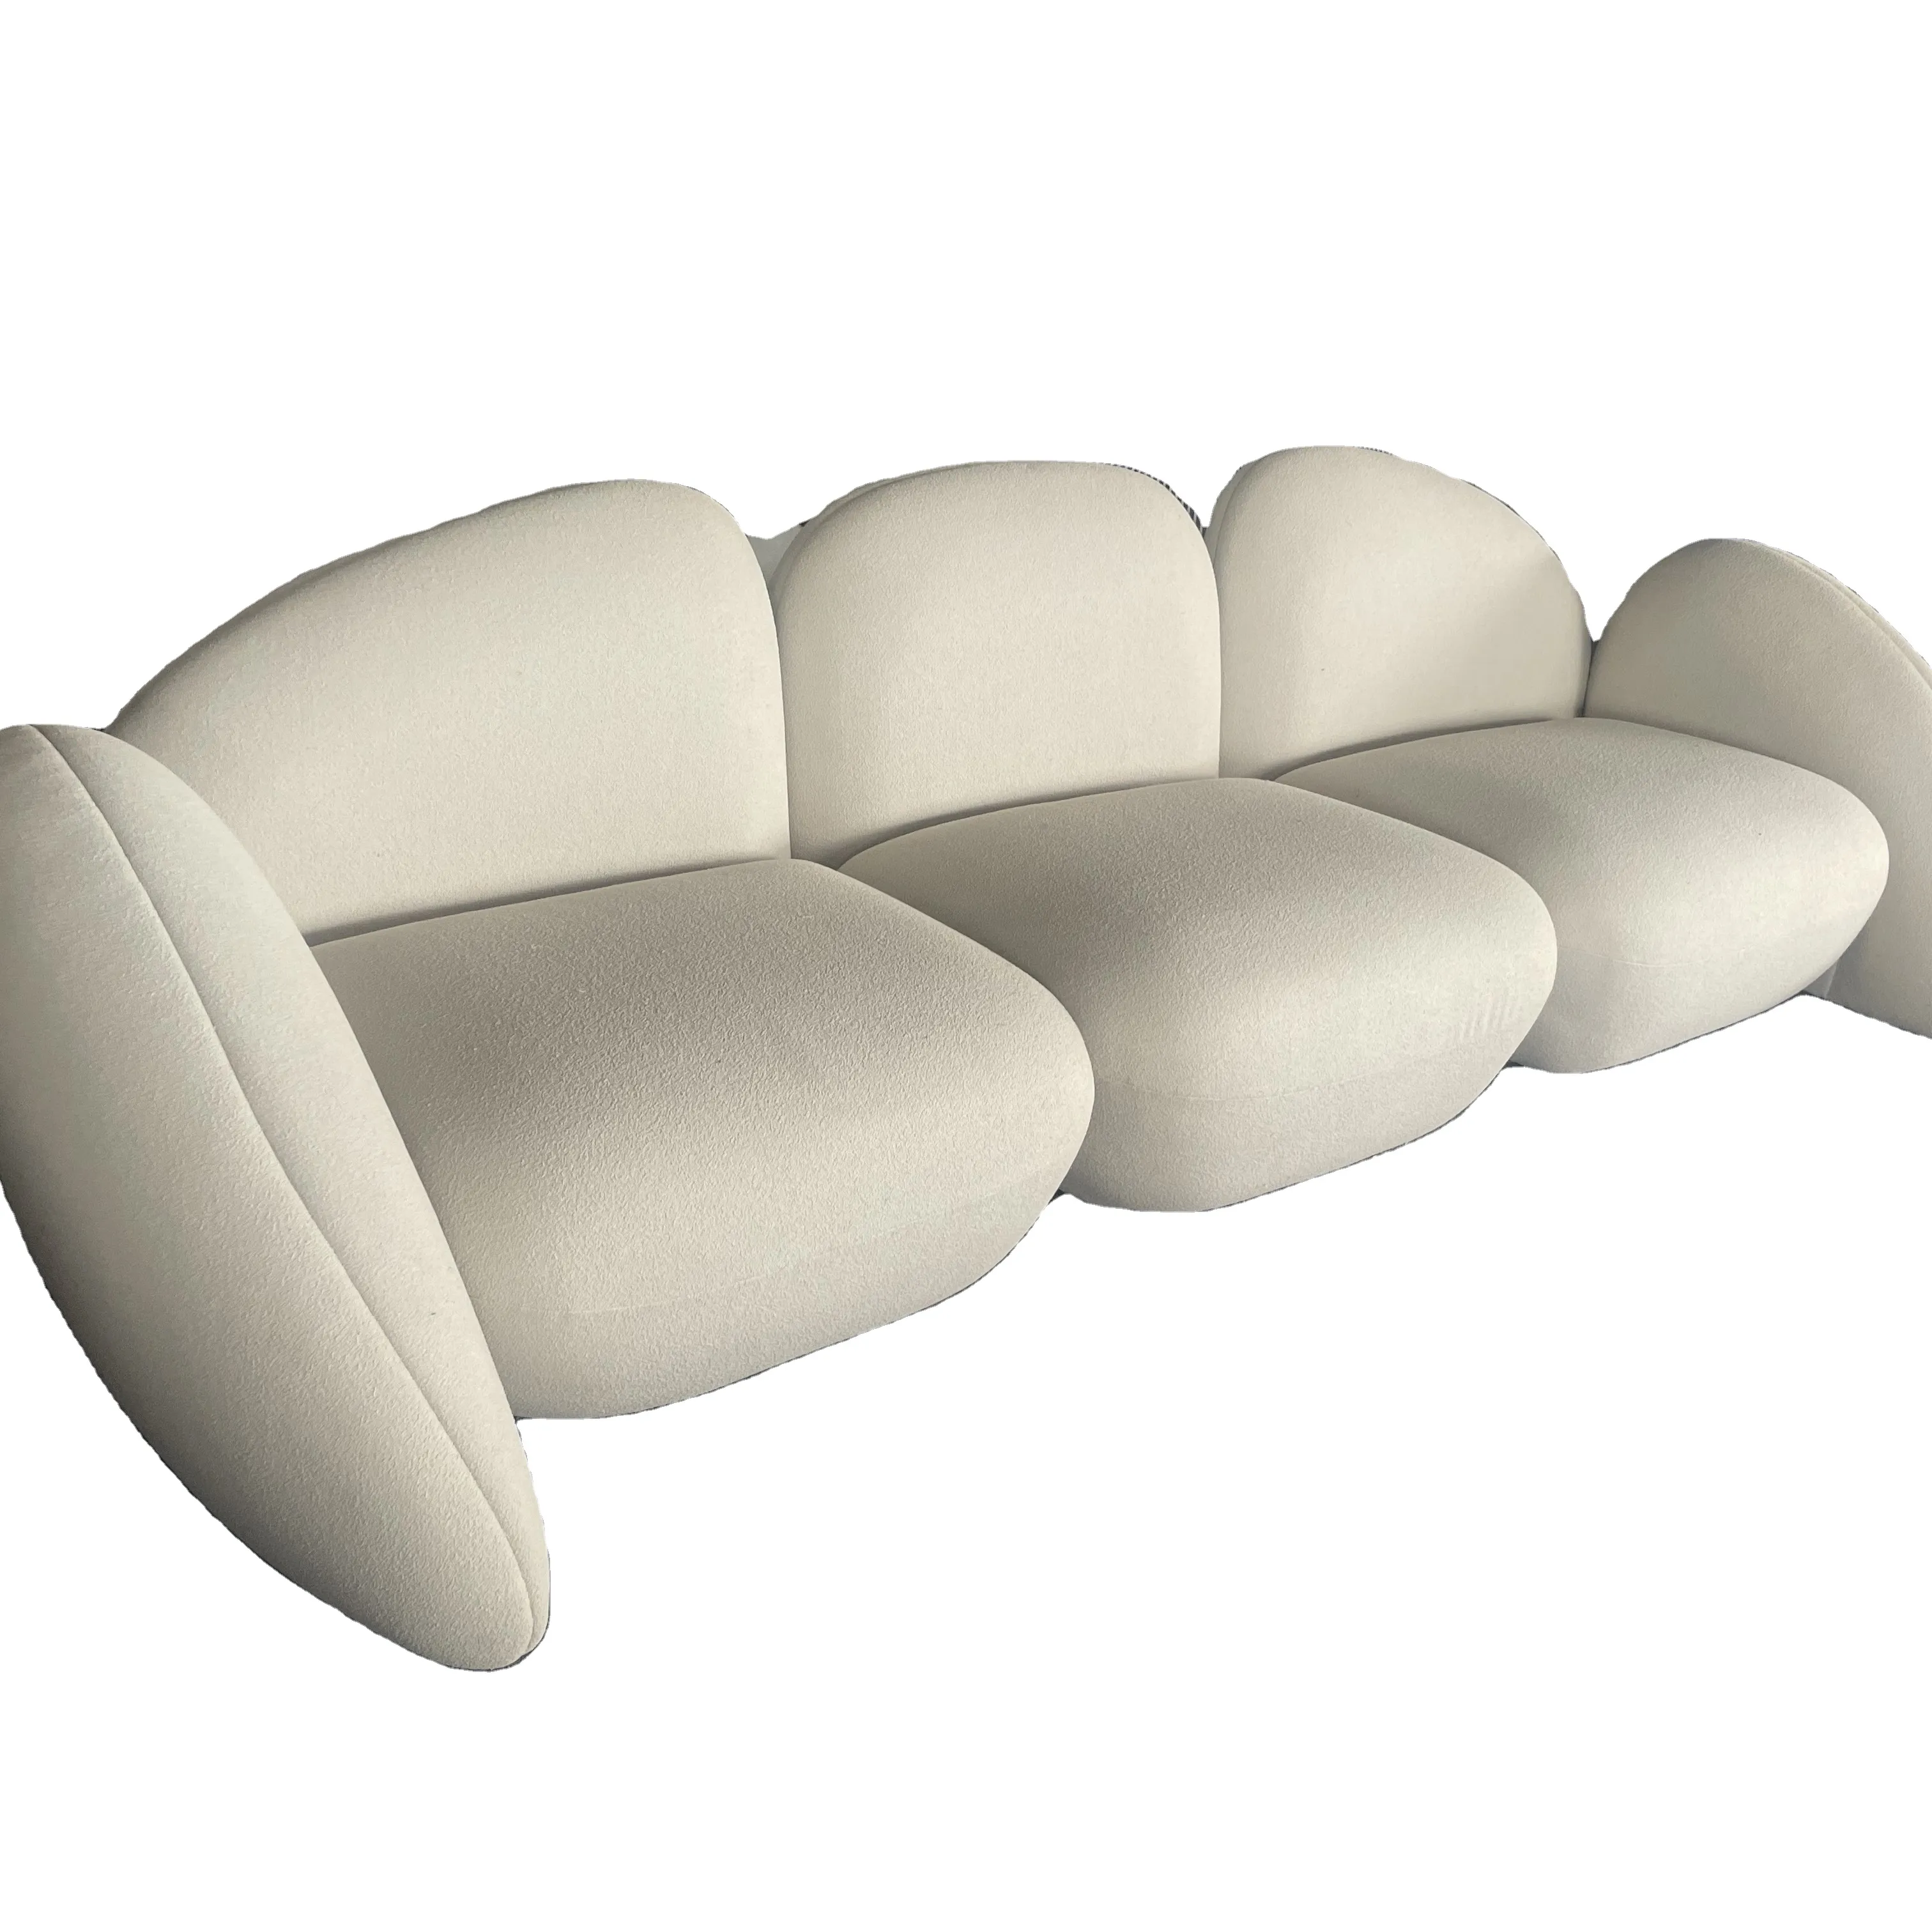 Meubles de salon ensembles de canapés pour la maison ensemble de canapés italien moderne en tissu lithos ensemble de meubles